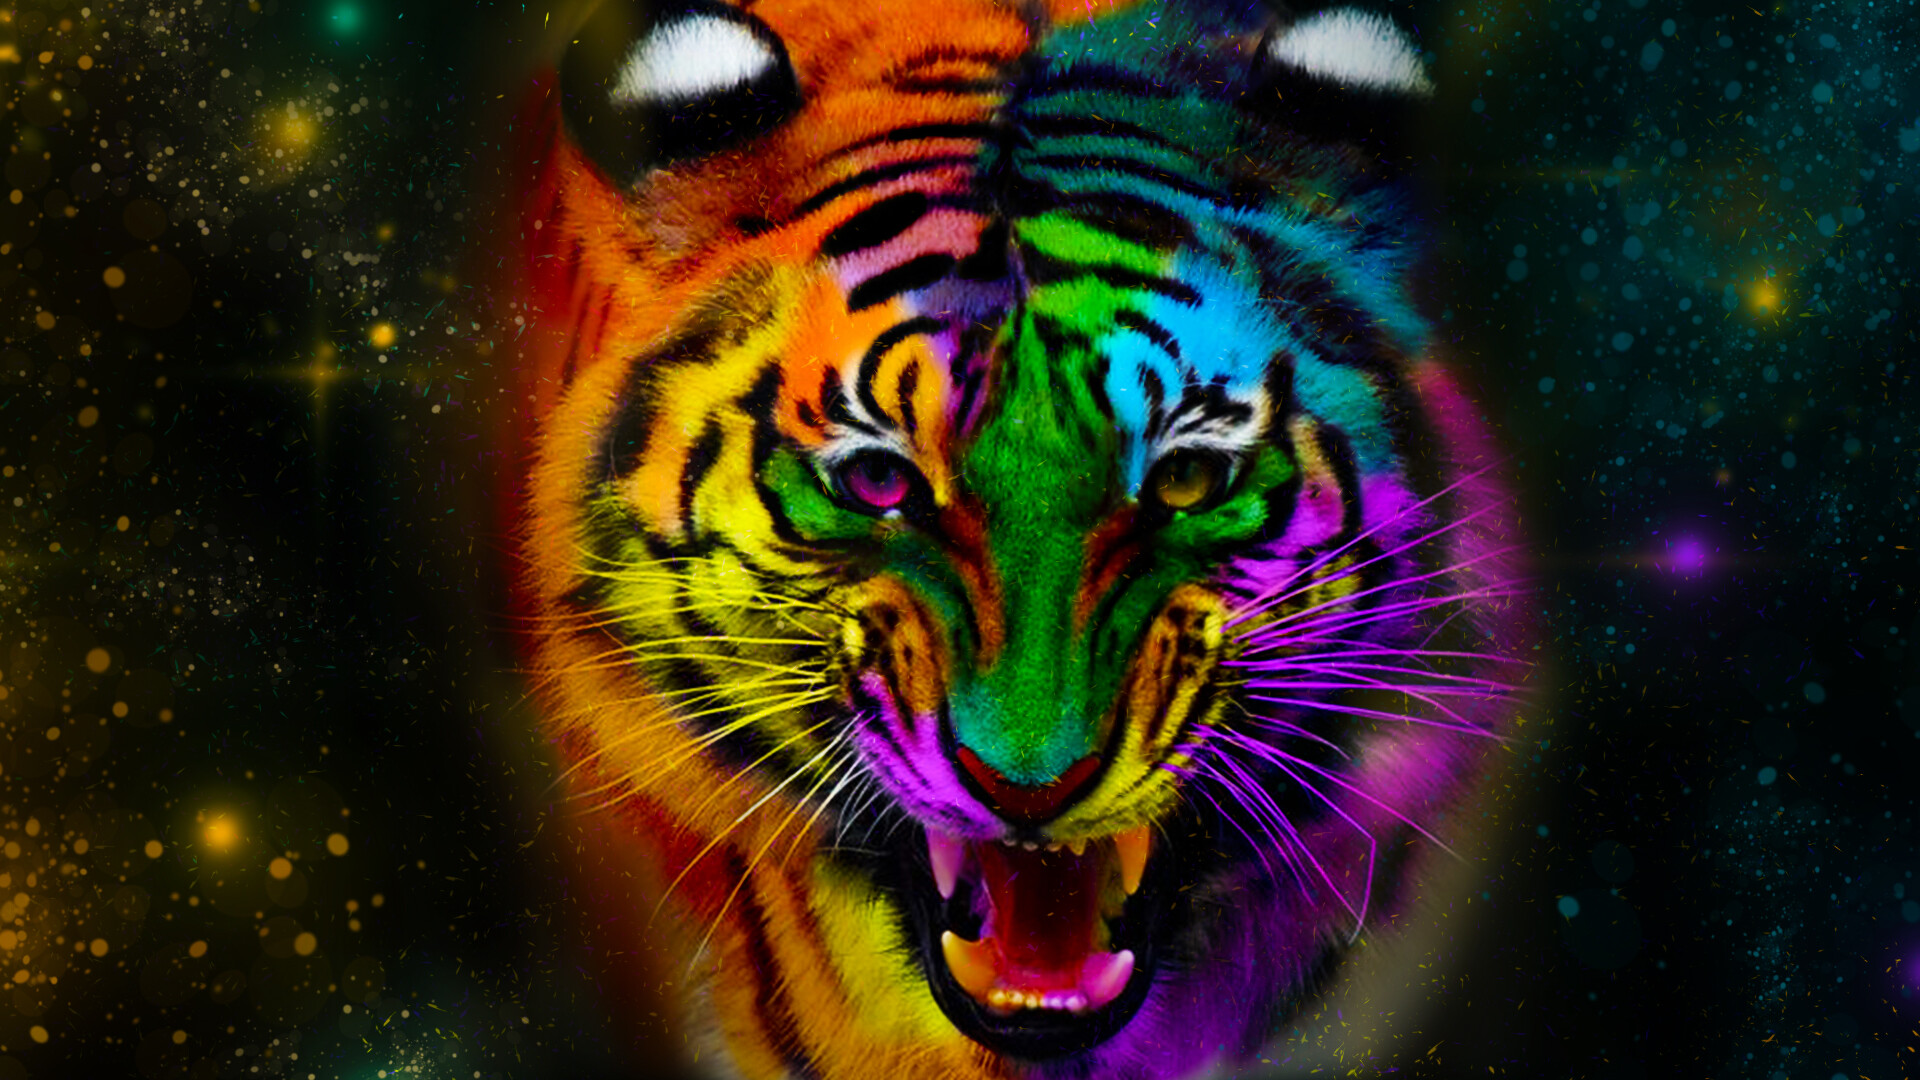 ArtStation - Tiger Face Wallpaper